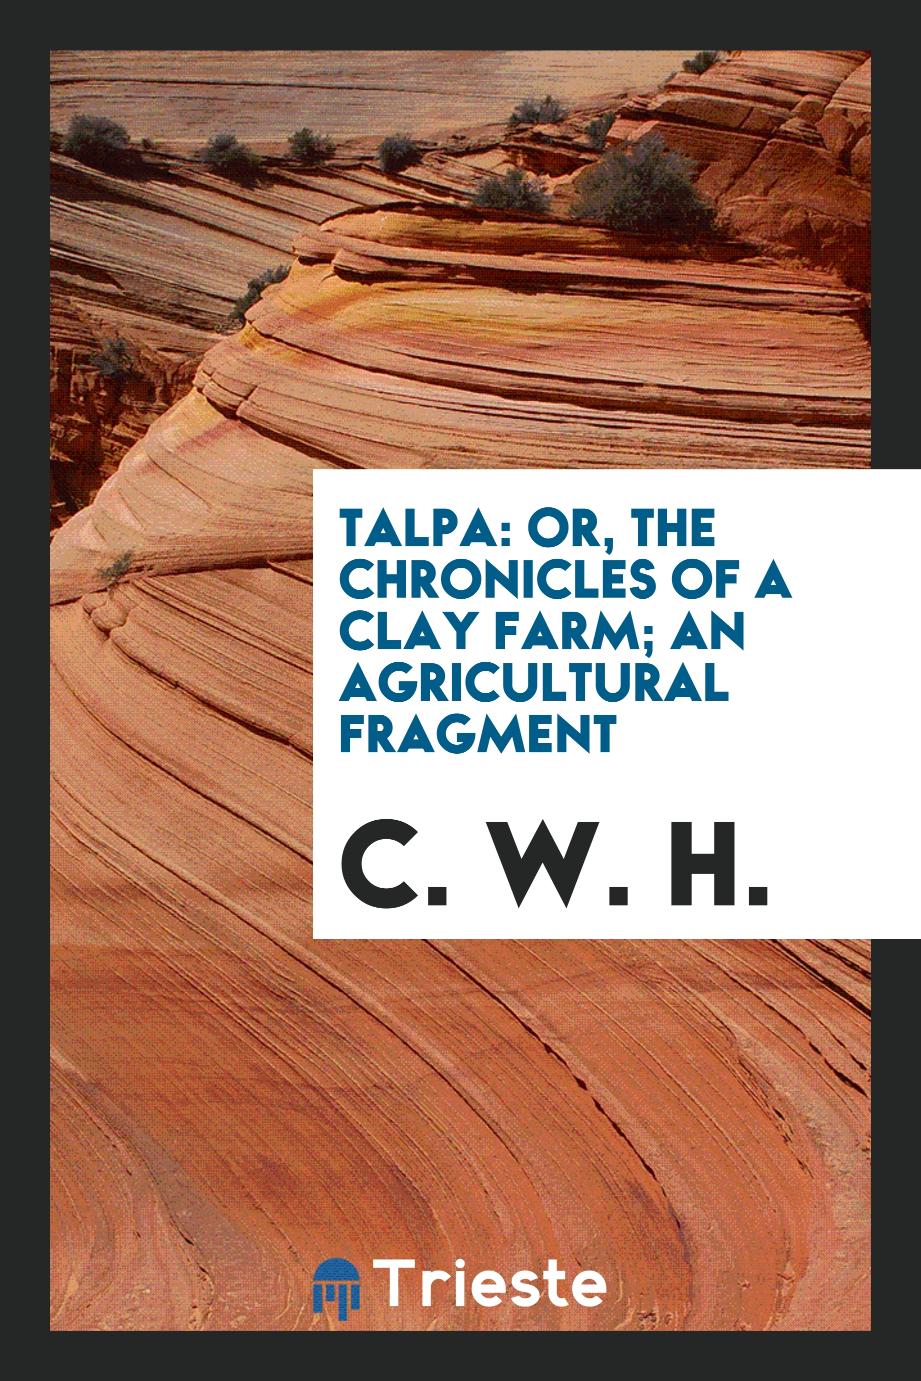 Talpa: Or, The Chronicles of a Clay Farm; An Agricultural Fragment